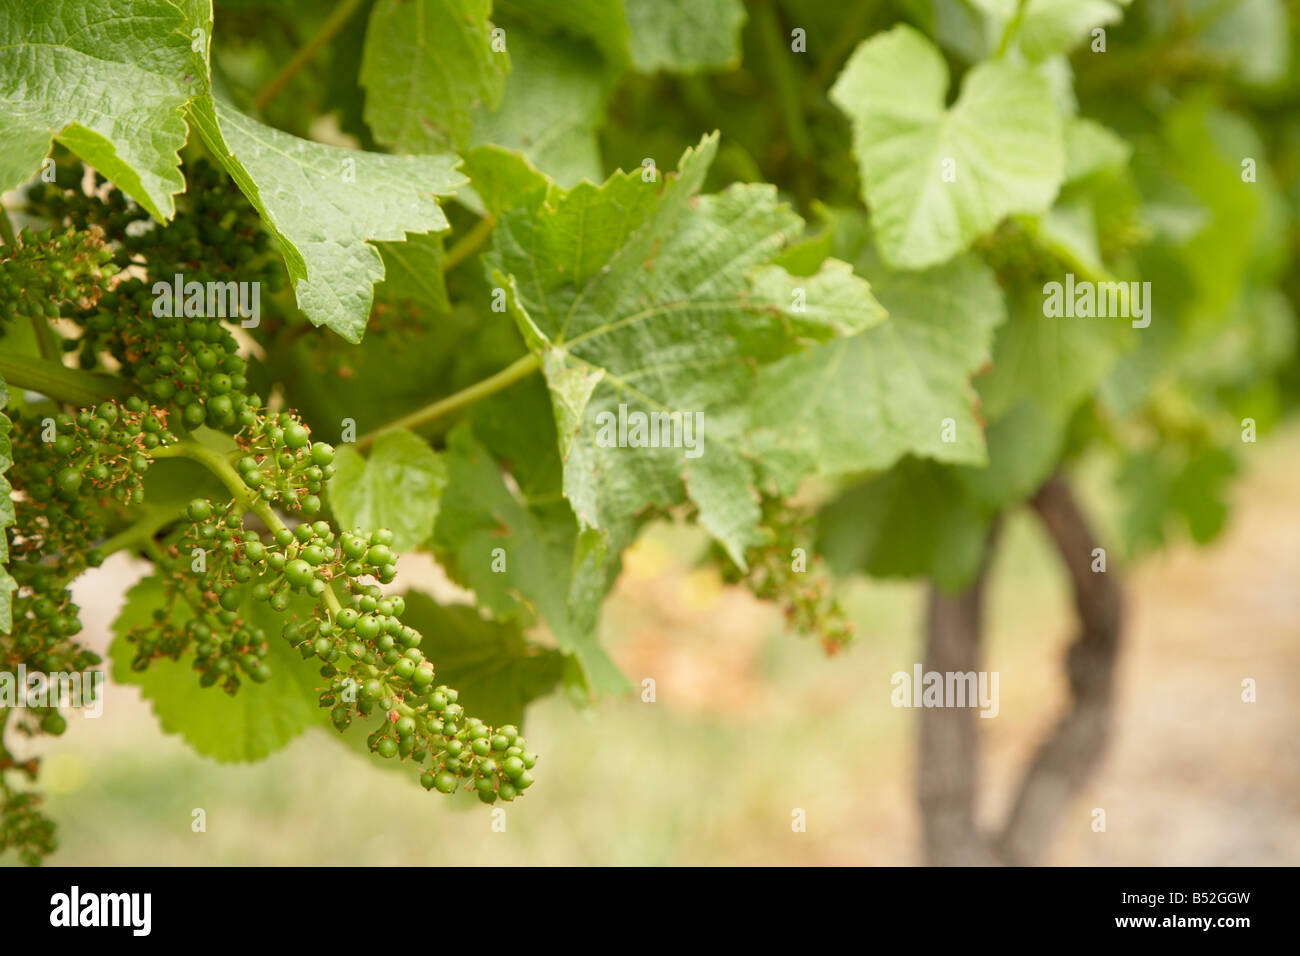 Jeune vigne maturation des baies sur la vigne encore vert Banque D'Images